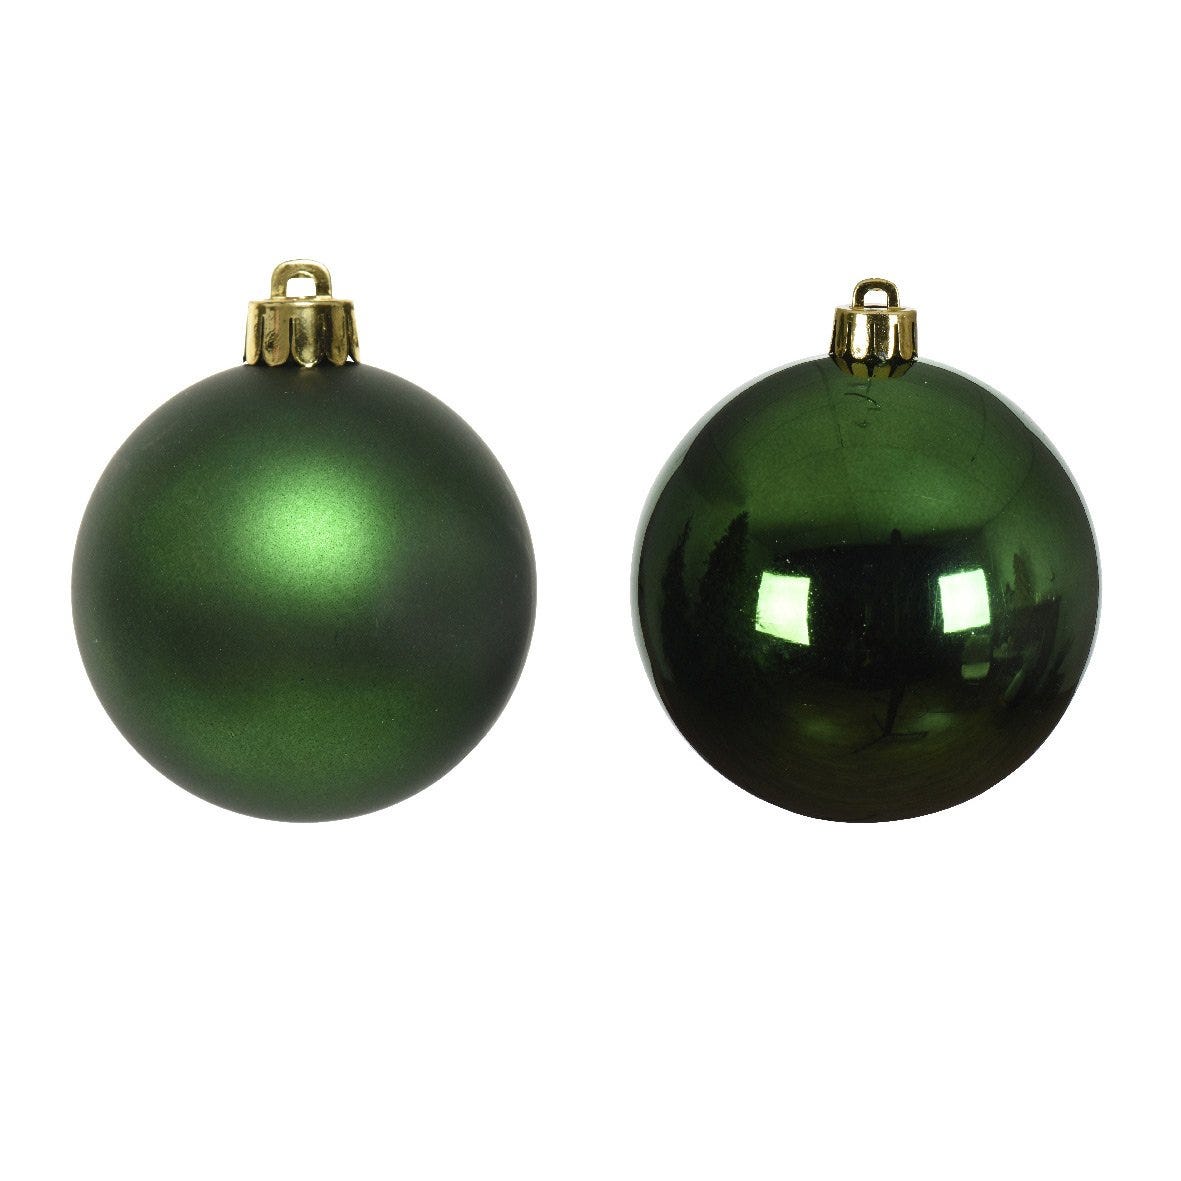 12 palle di corda sisal color verde 4 cm SFERE natalizie per albero  DECORAZIONI - RomaLab